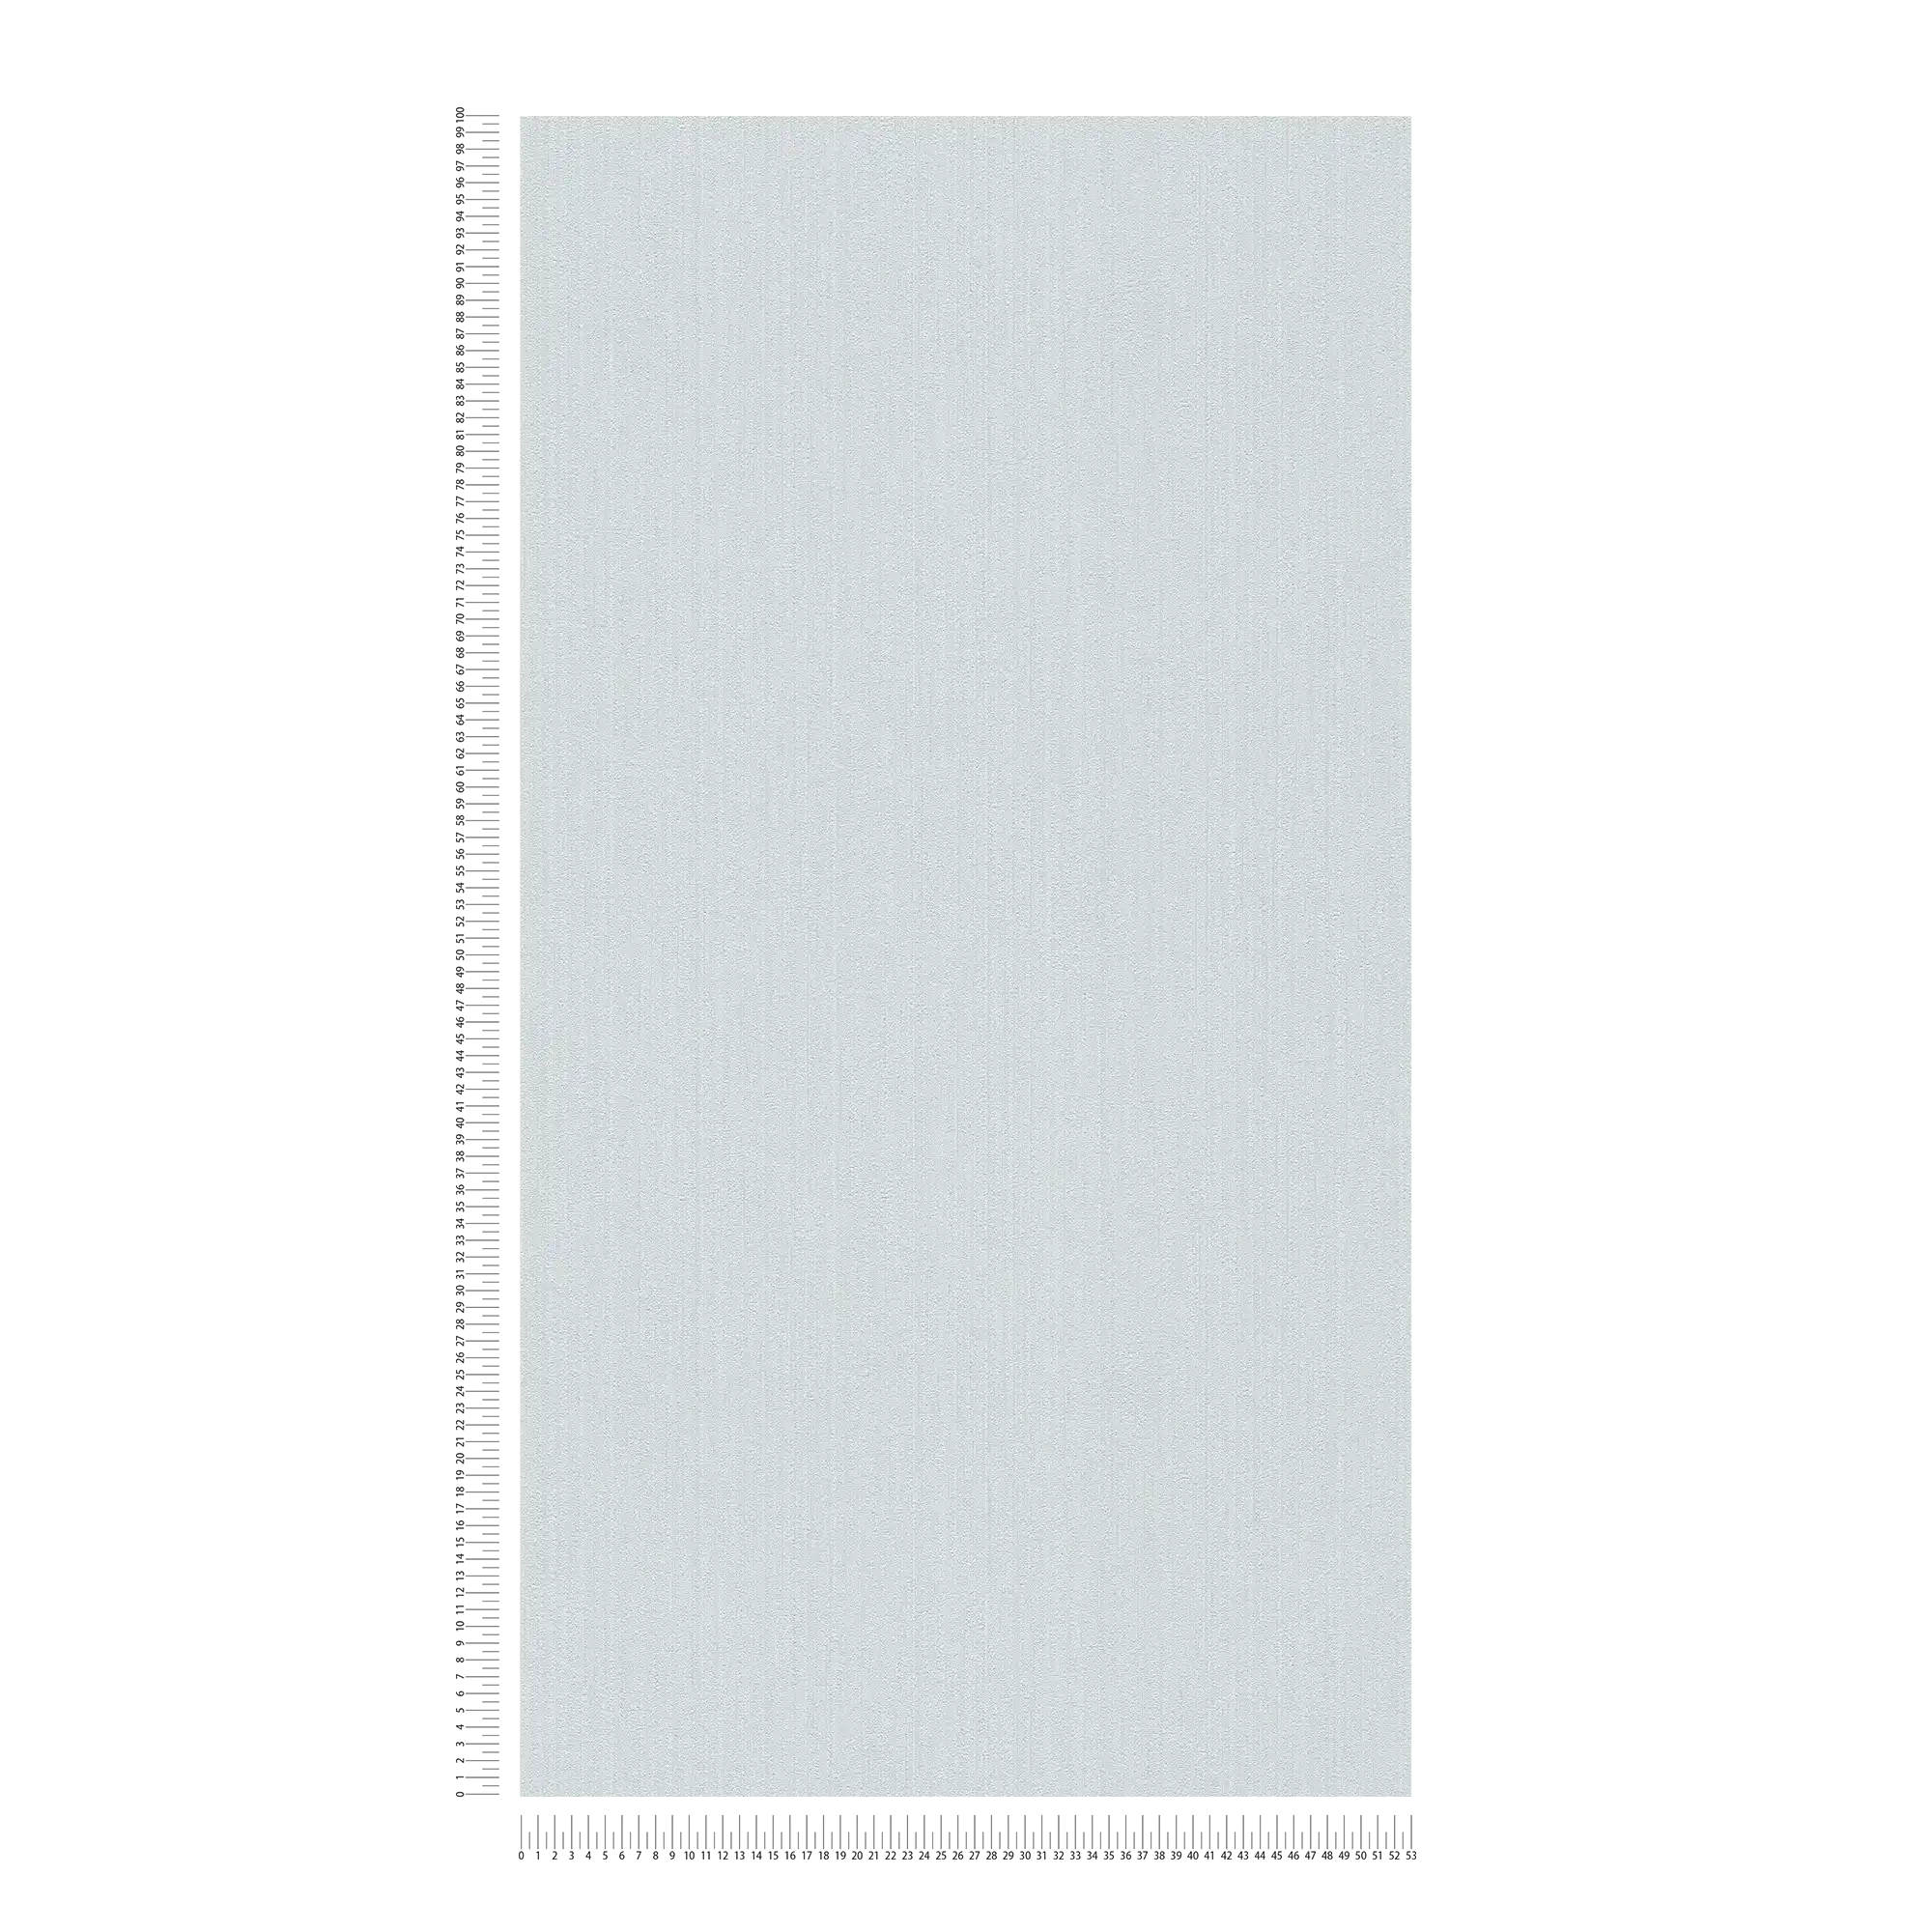             Carta da parati grigio blu chiaro, seta opaca con effetto struttura
        